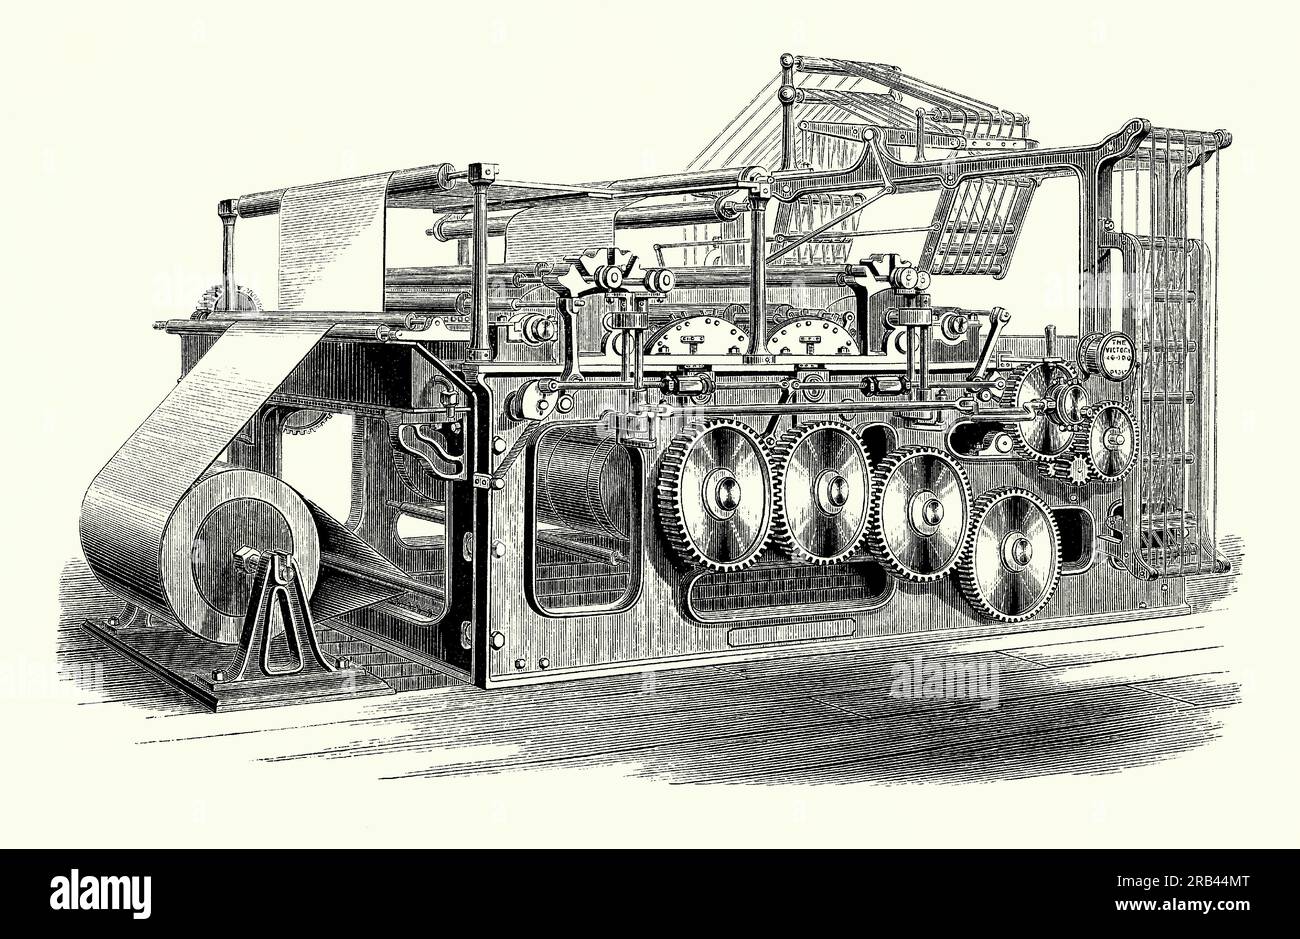 Une ancienne gravure d'une machine d'impression et de pliage "Victory" de c.1870. Il est tiré d'un livre de génie mécanique victorien des années 1880 La machine était une presse automatique à grande vitesse, construite par Duncan & Wilson de Liverpool, Merseyside, Lancashire, Angleterre, Royaume-Uni. C'était le premier qui incorporait également un mécanisme de pliage du papier. La nouvelle presse a permis aux journaux d'augmenter le nombre de pages pour accroître la circulation. La « Victory » était capable d’imprimer 9 000 journaux complets et pliés de 8 pages par heure. Banque D'Images